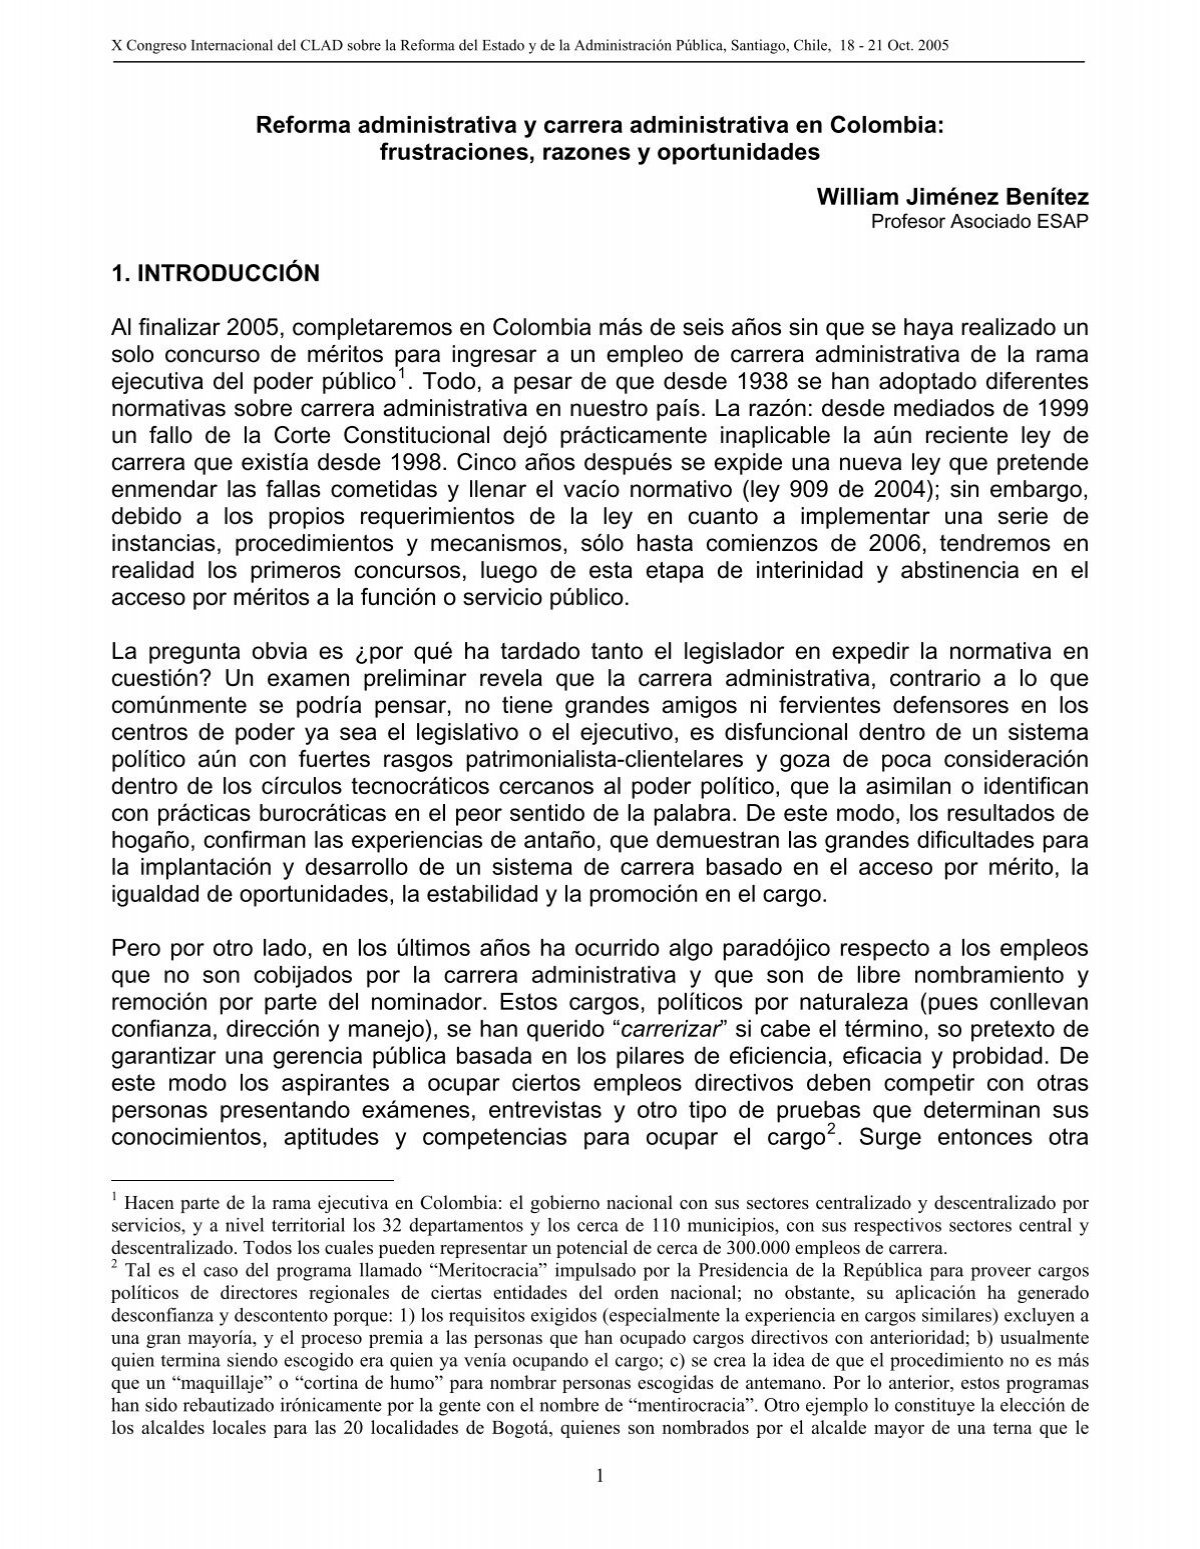 Reforma administrativa y carrera administrativa en Colombia